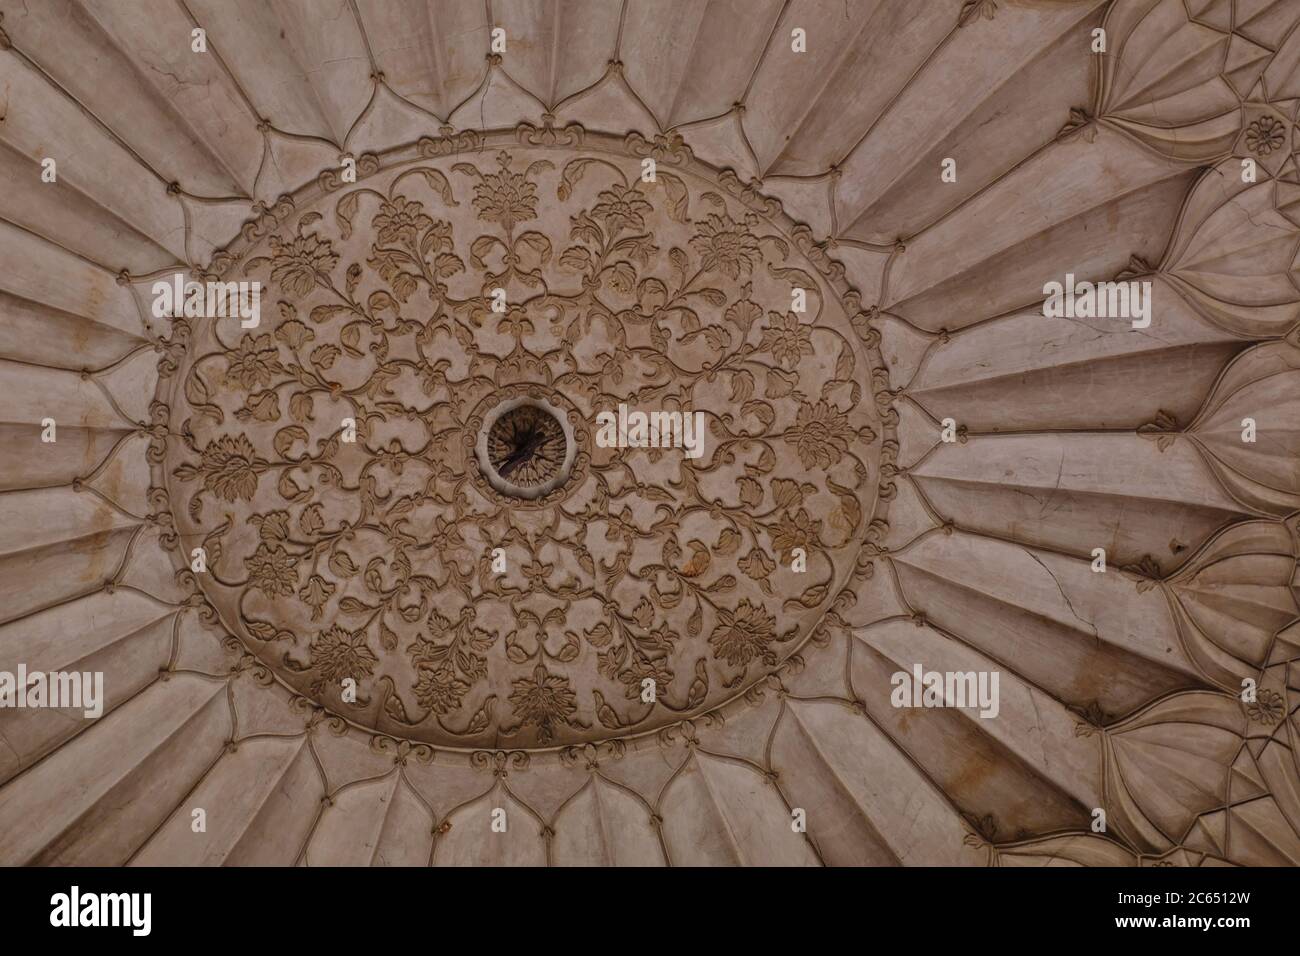 Photographie présentant des motifs sur le plafond de la tombe de Safdar Jang à Delhi, Inde. Banque D'Images